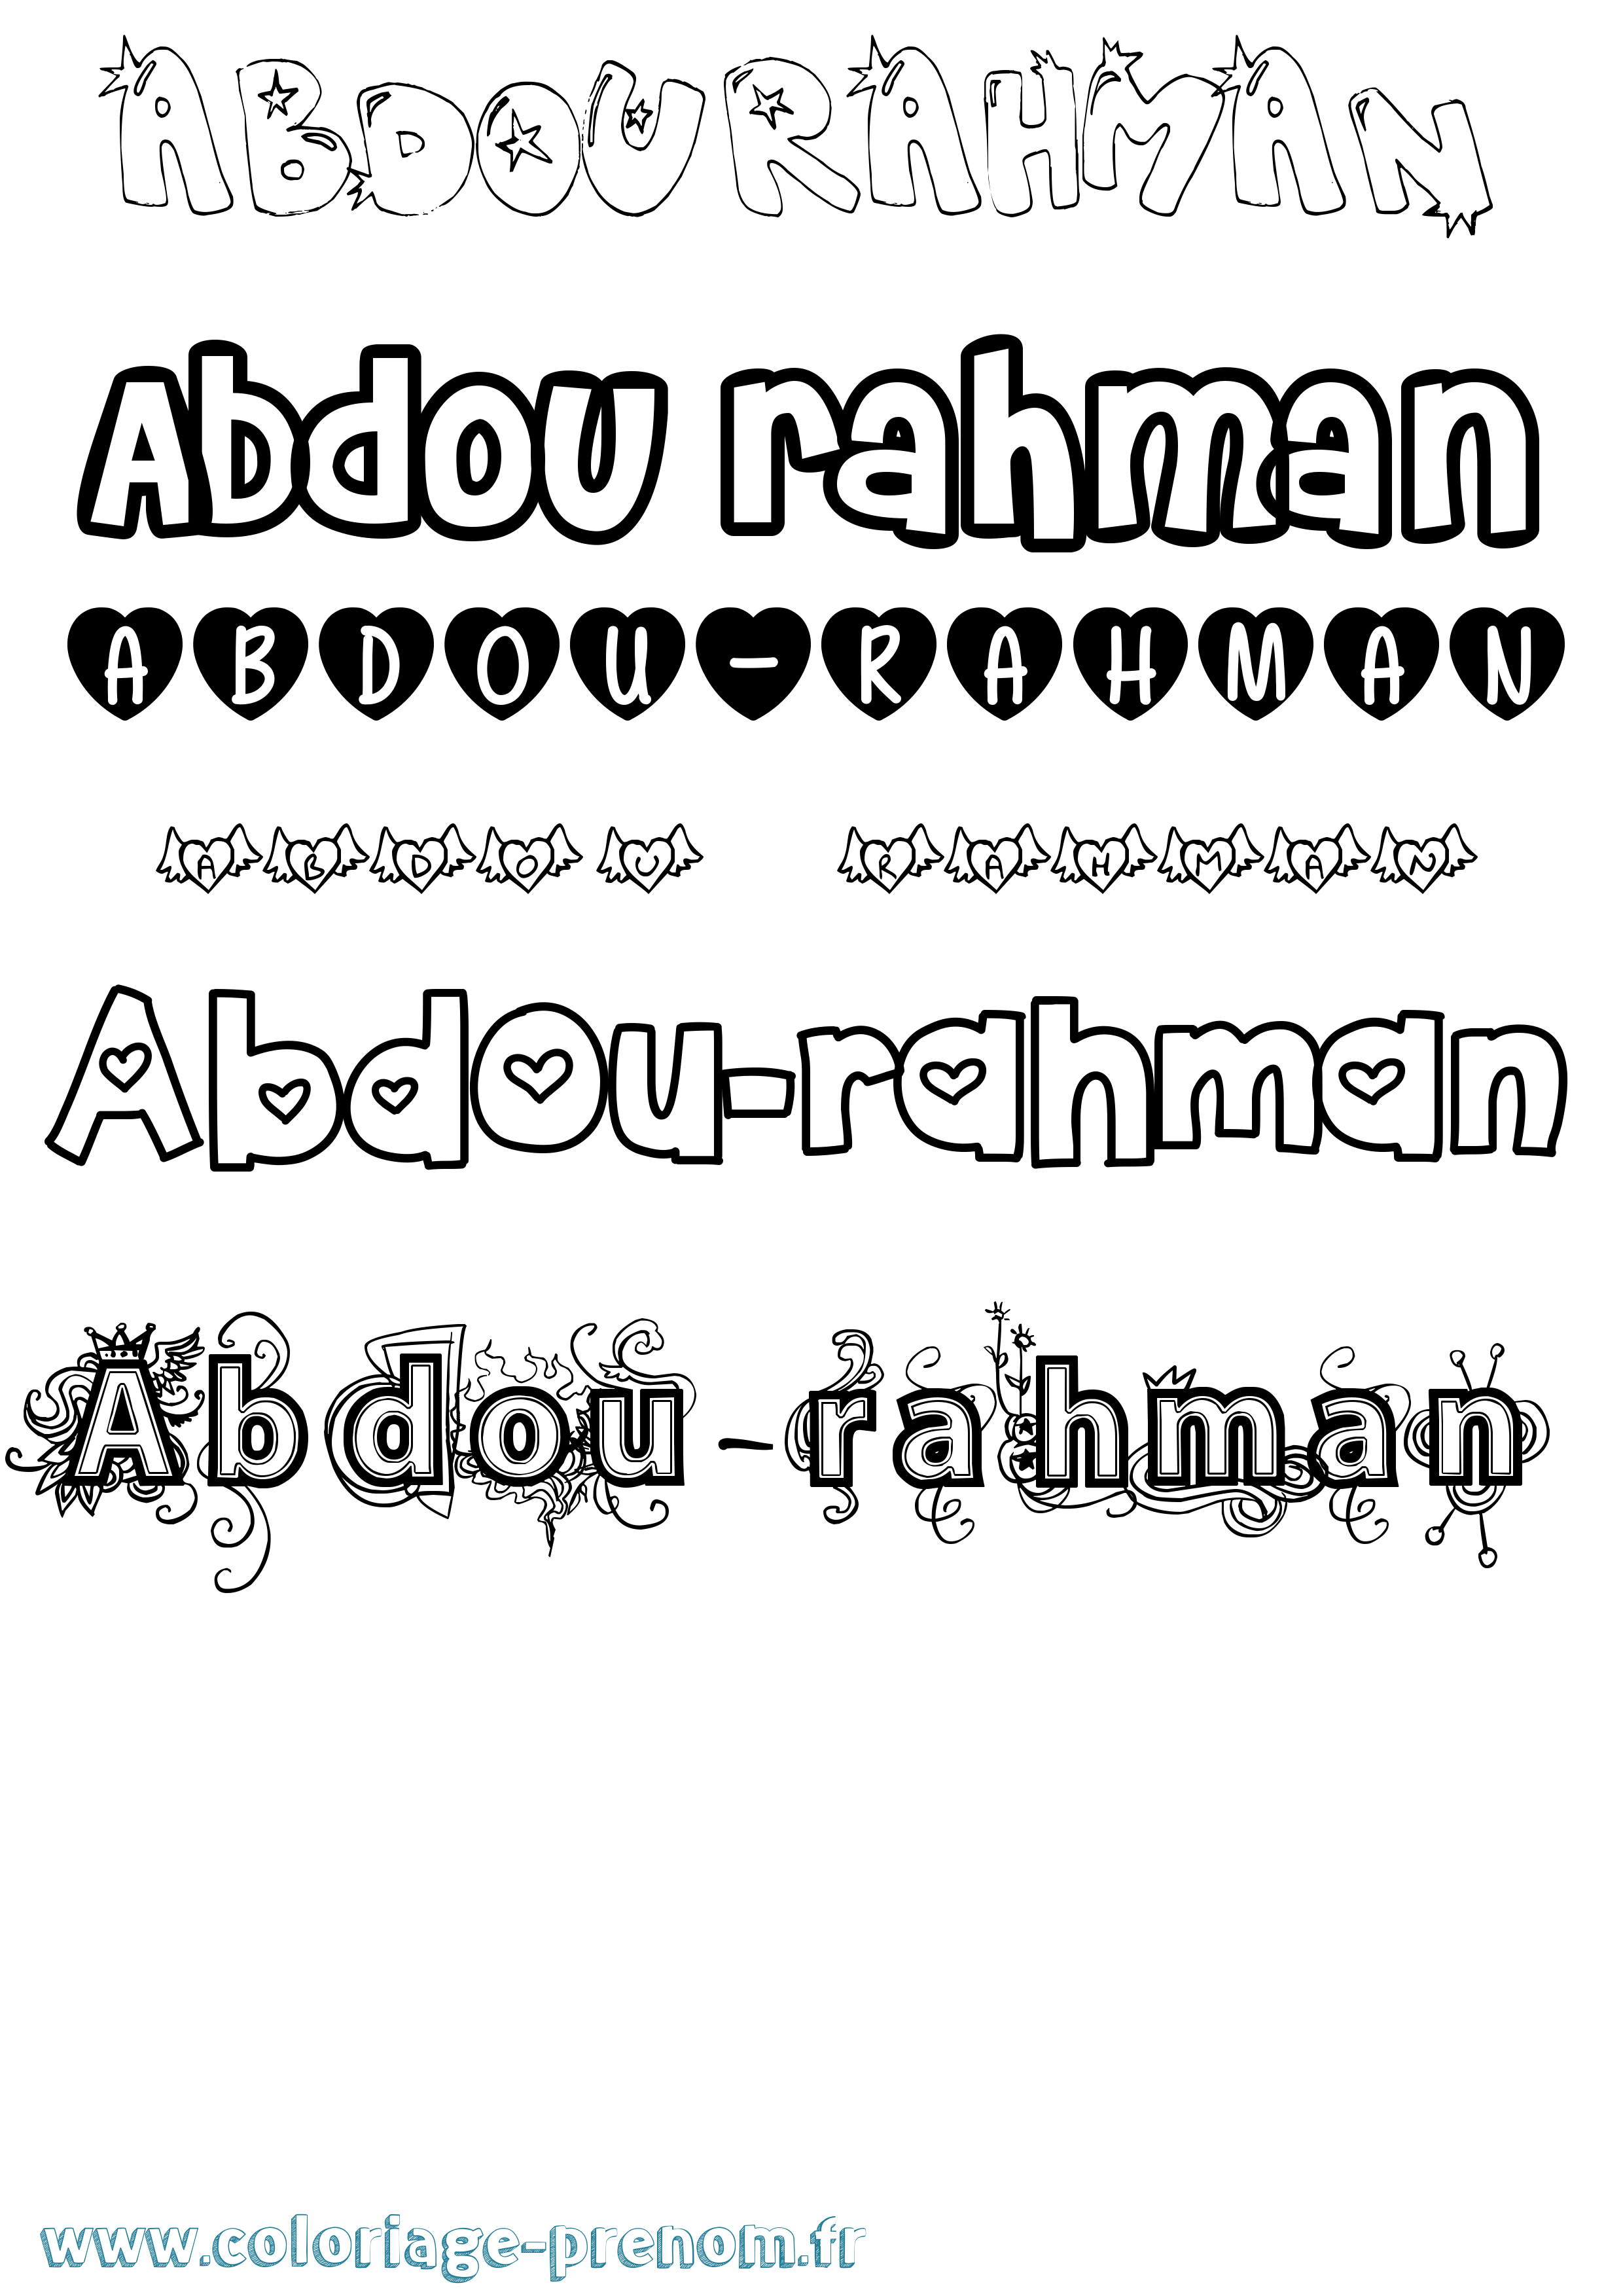 Coloriage prénom Abdou-Rahman Girly